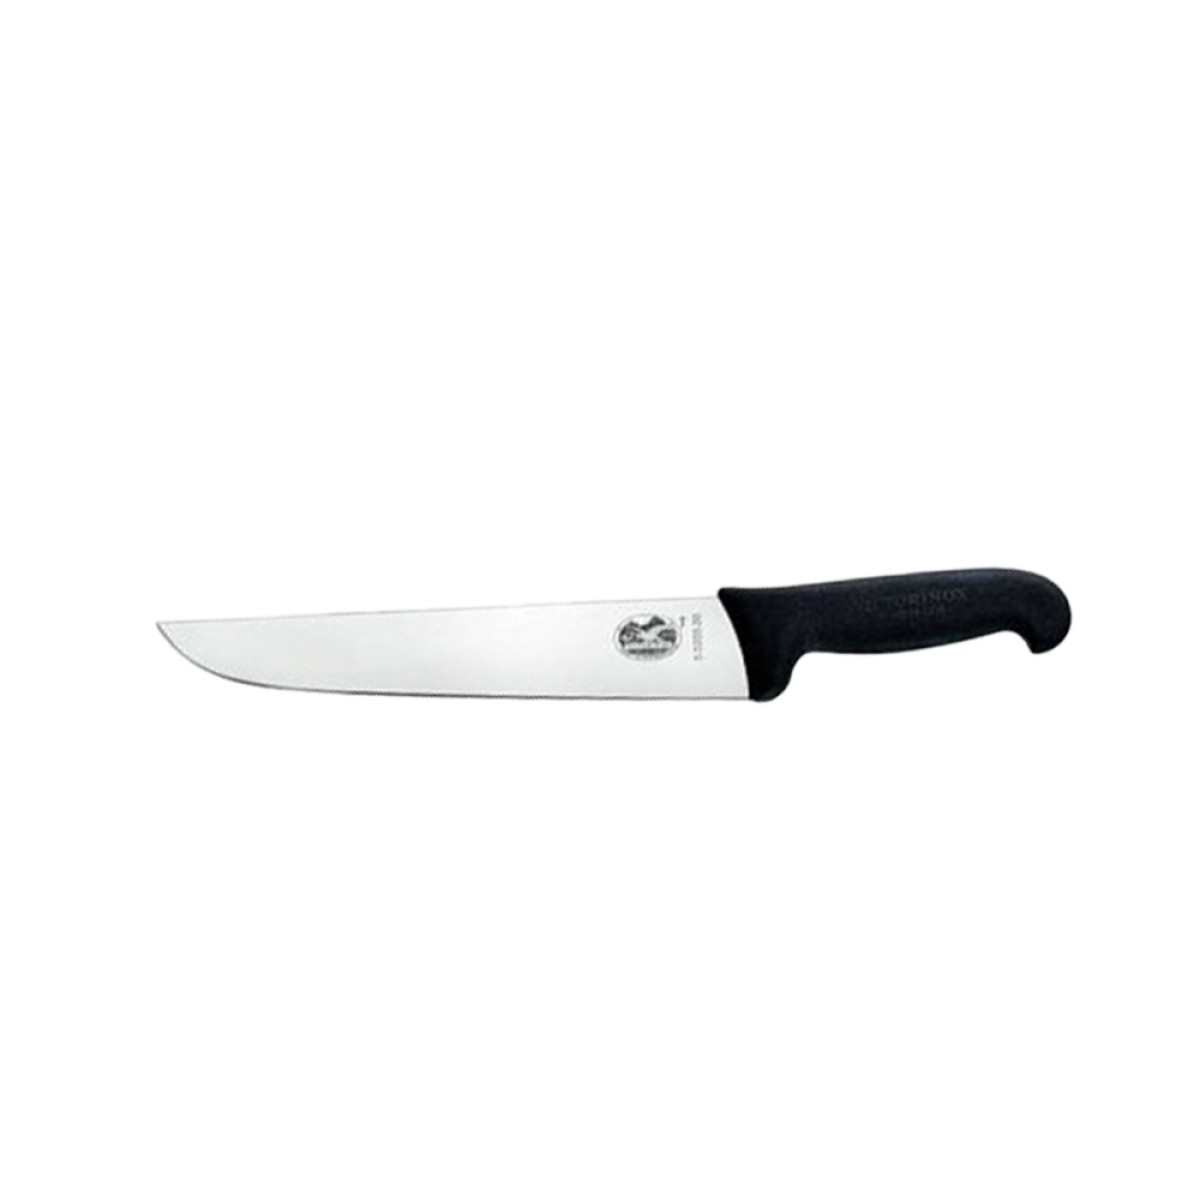 KNIFE VICTORINOX BONER 56103-18 STR NAR